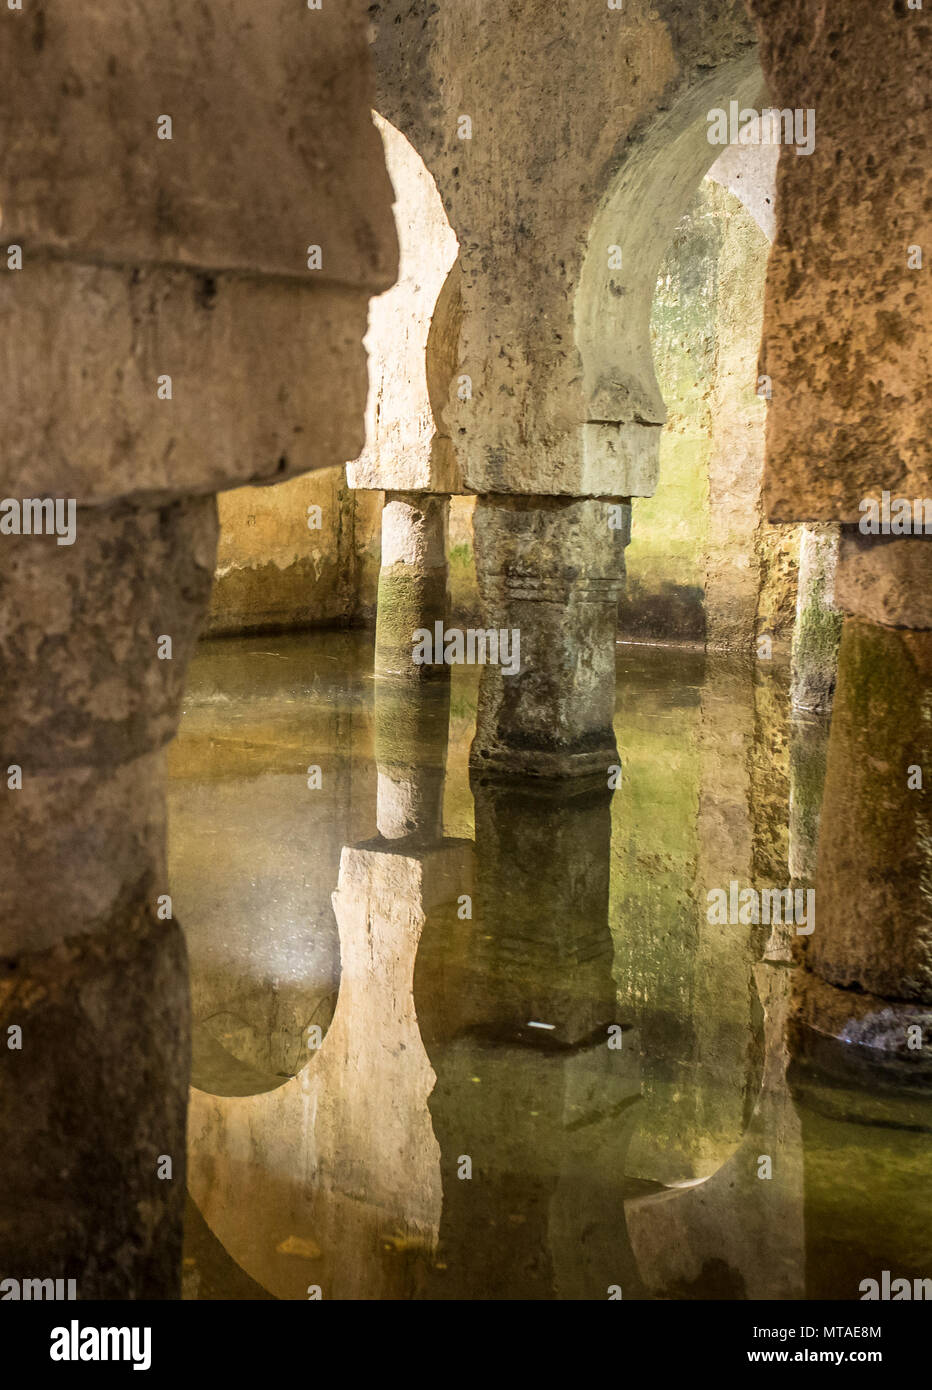 Cisterna araba o Aljibe, antica moschea durante il medioevo regola di musulmani in Spagna, Caceres Foto Stock